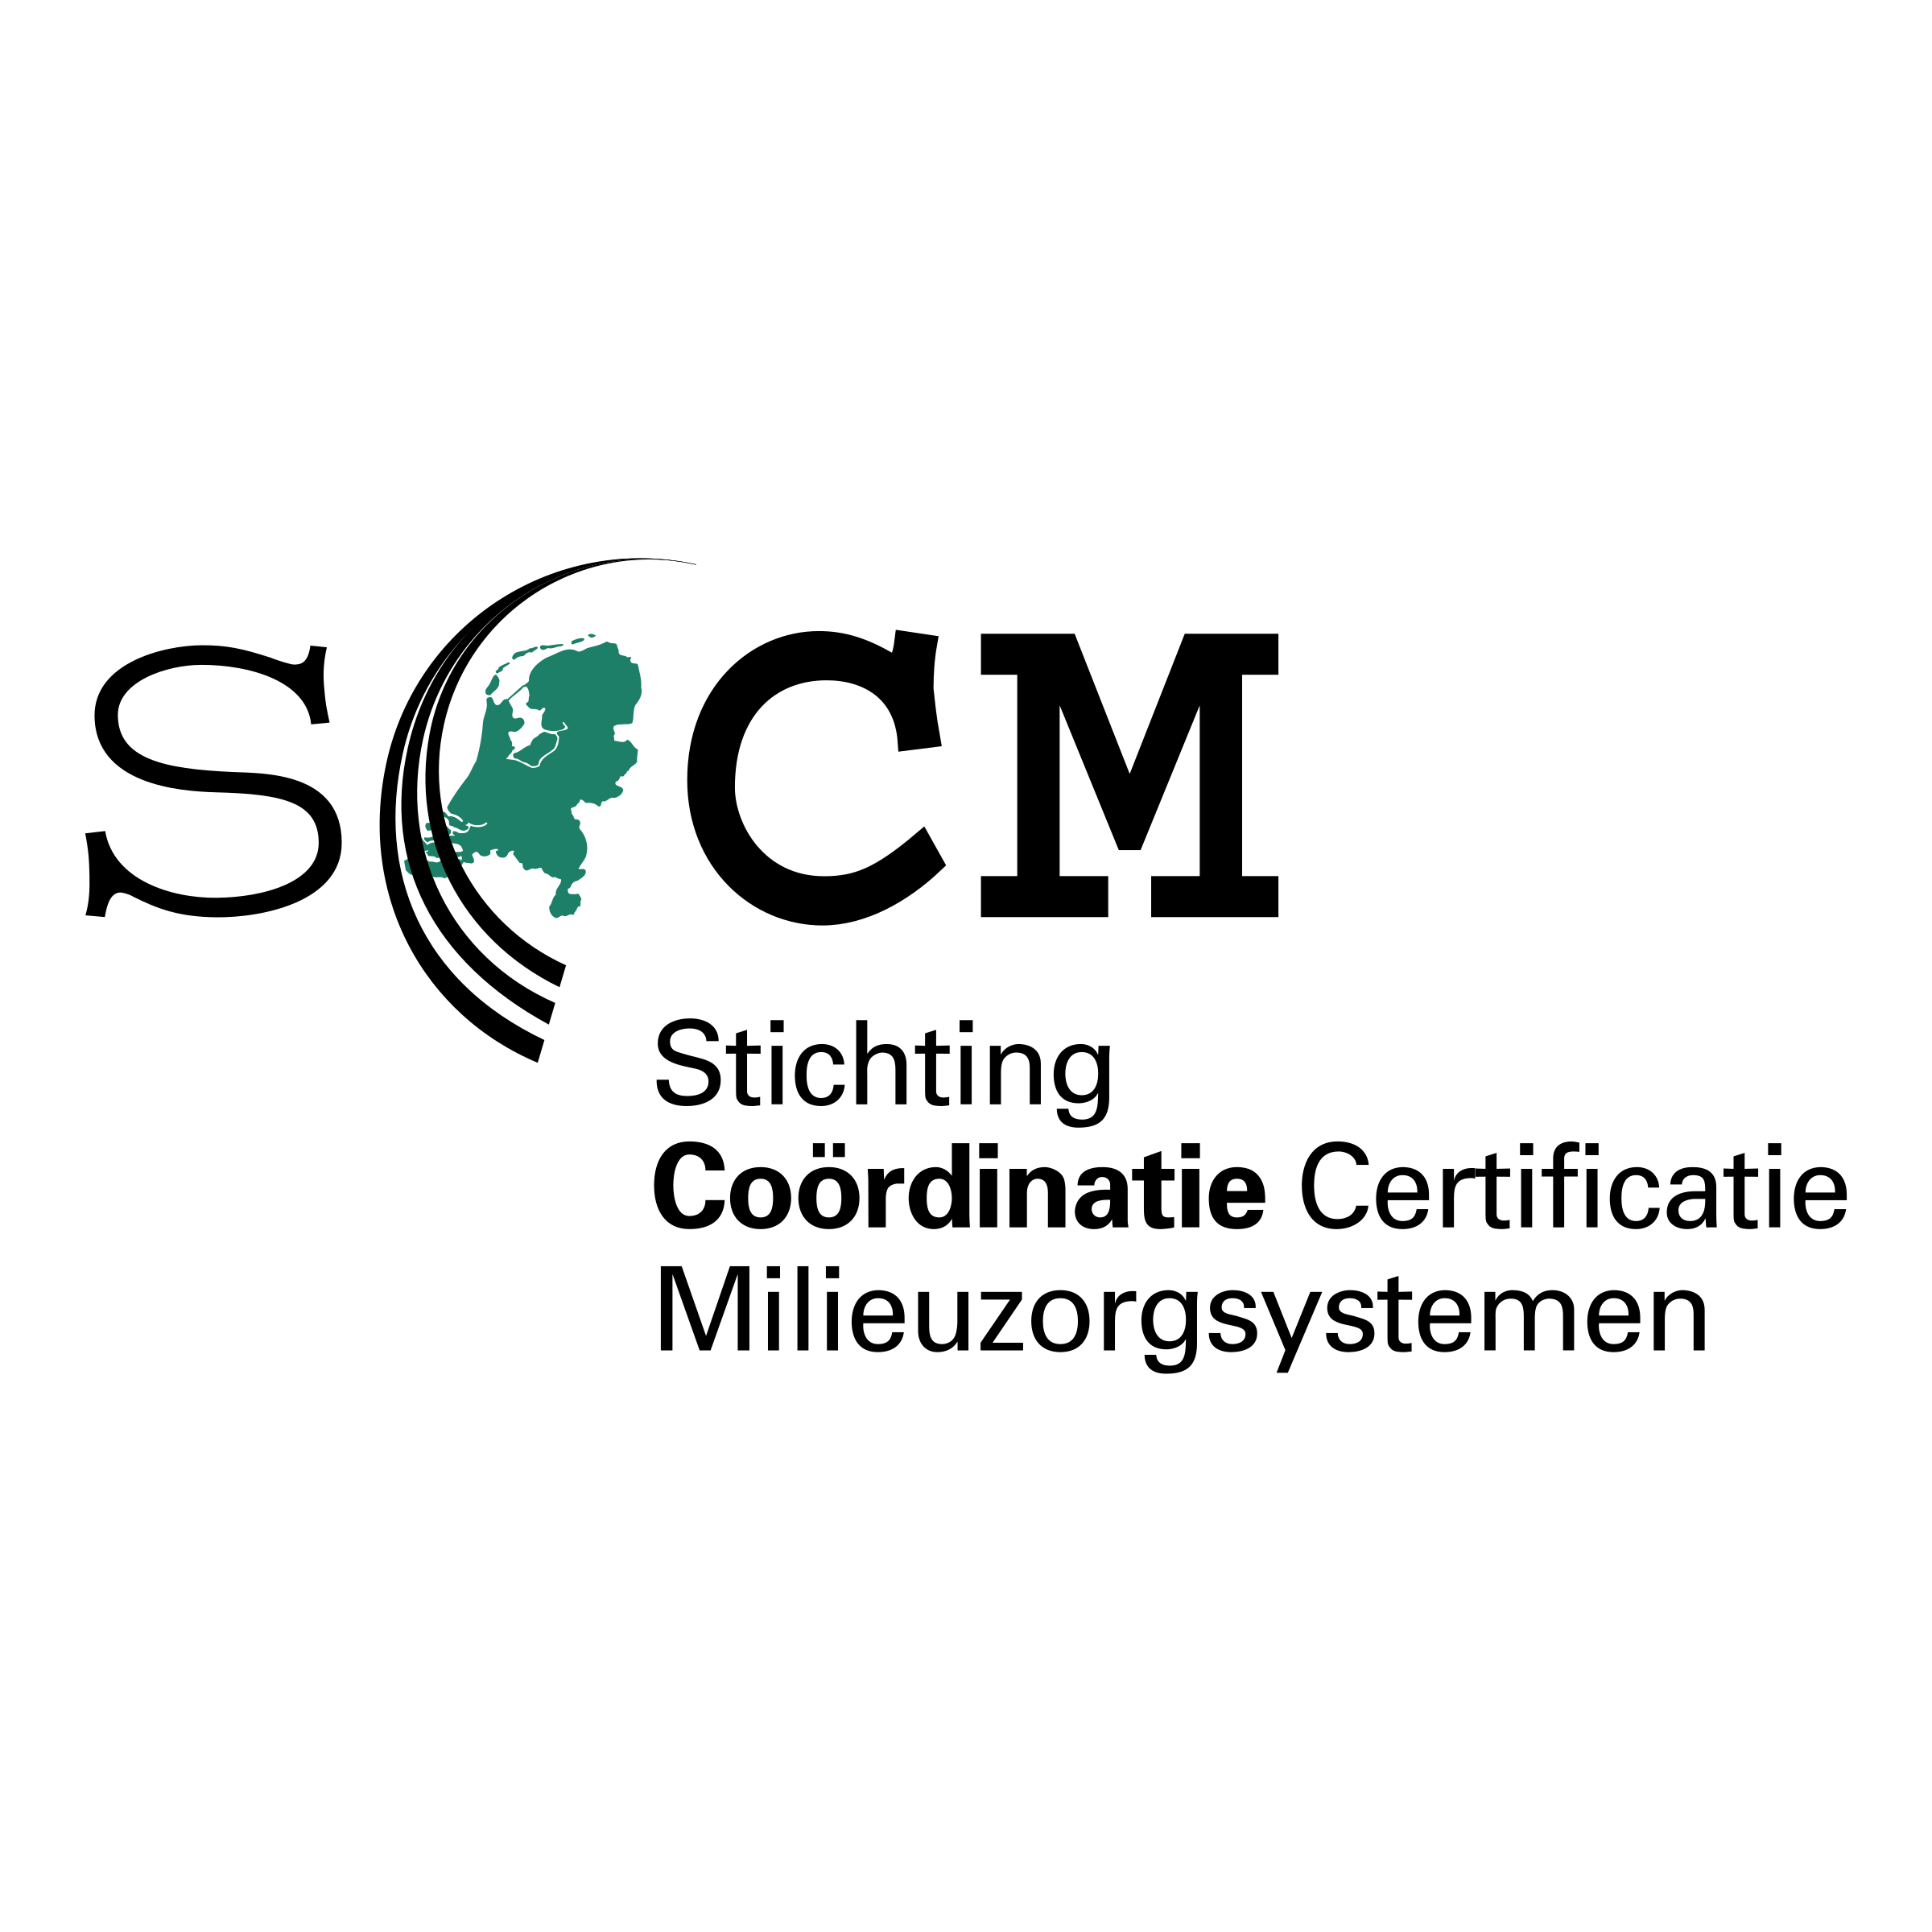 SCCM Logo - SCCM Logo PNG Transparent & SVG Vector